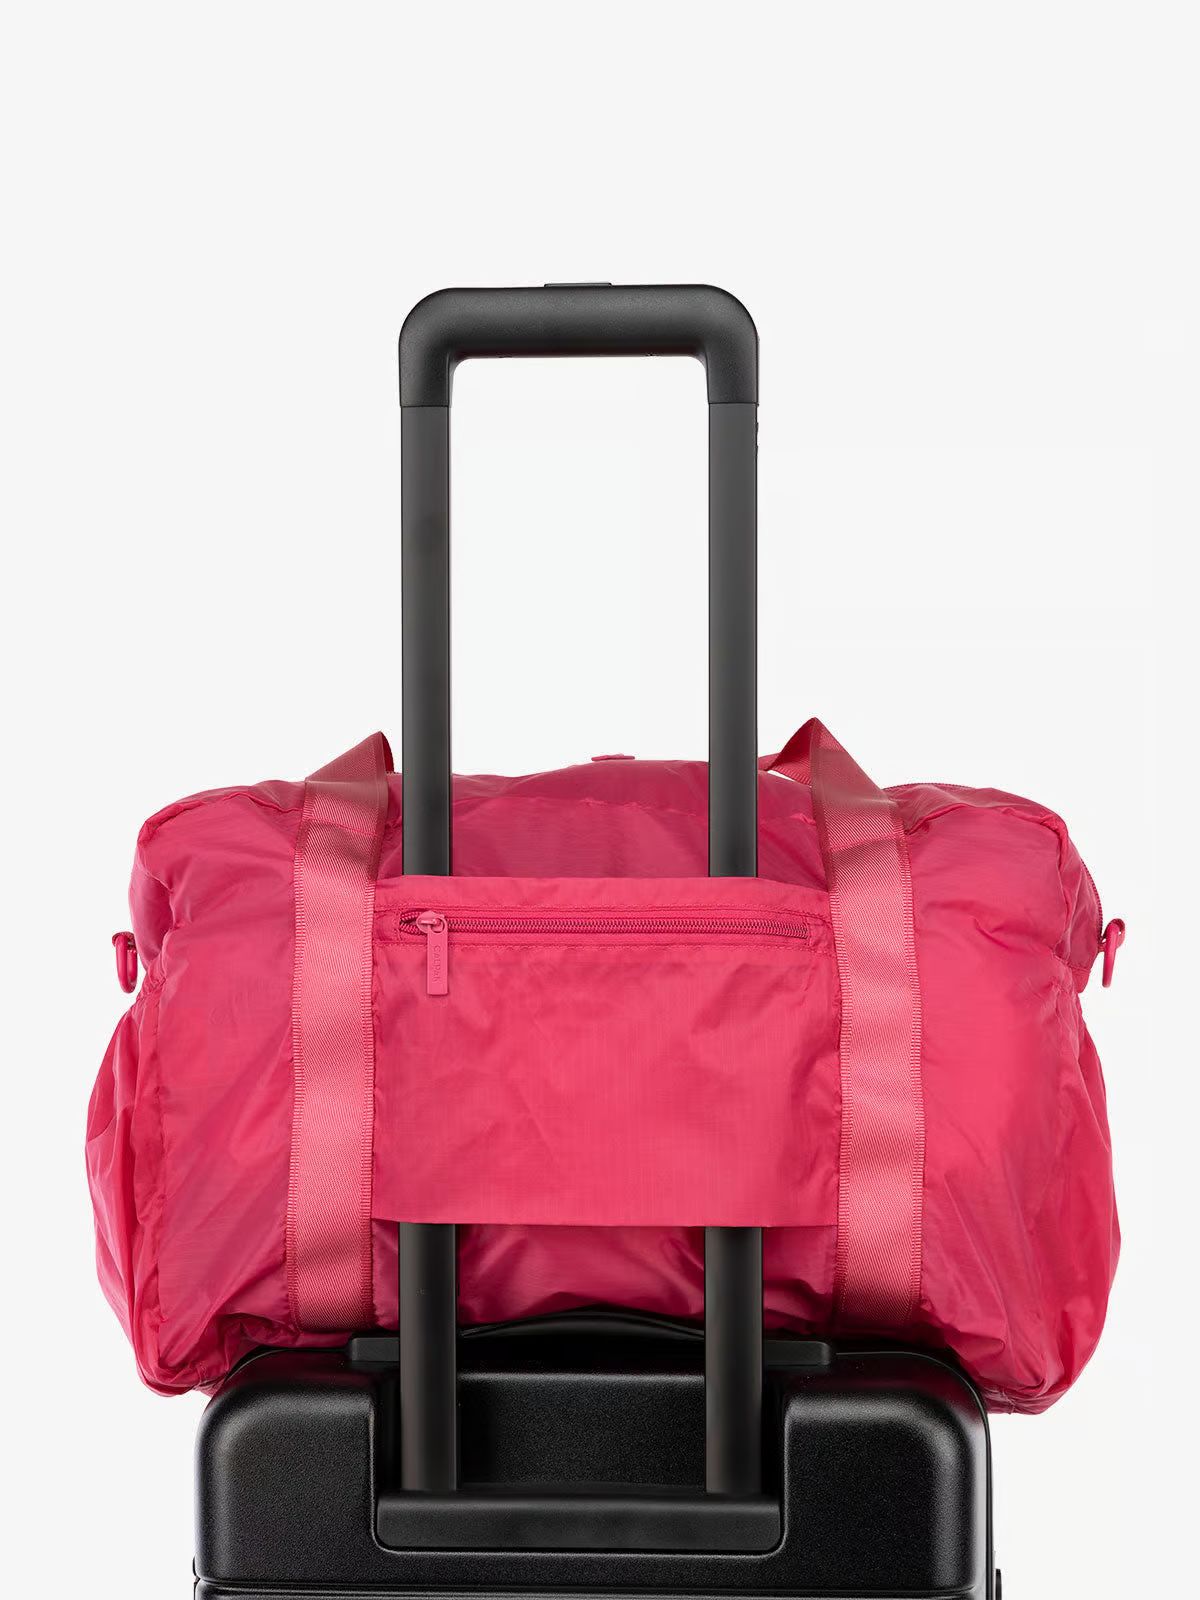 Compakt Duffel Bag | CALPAK | CALPAK Travel